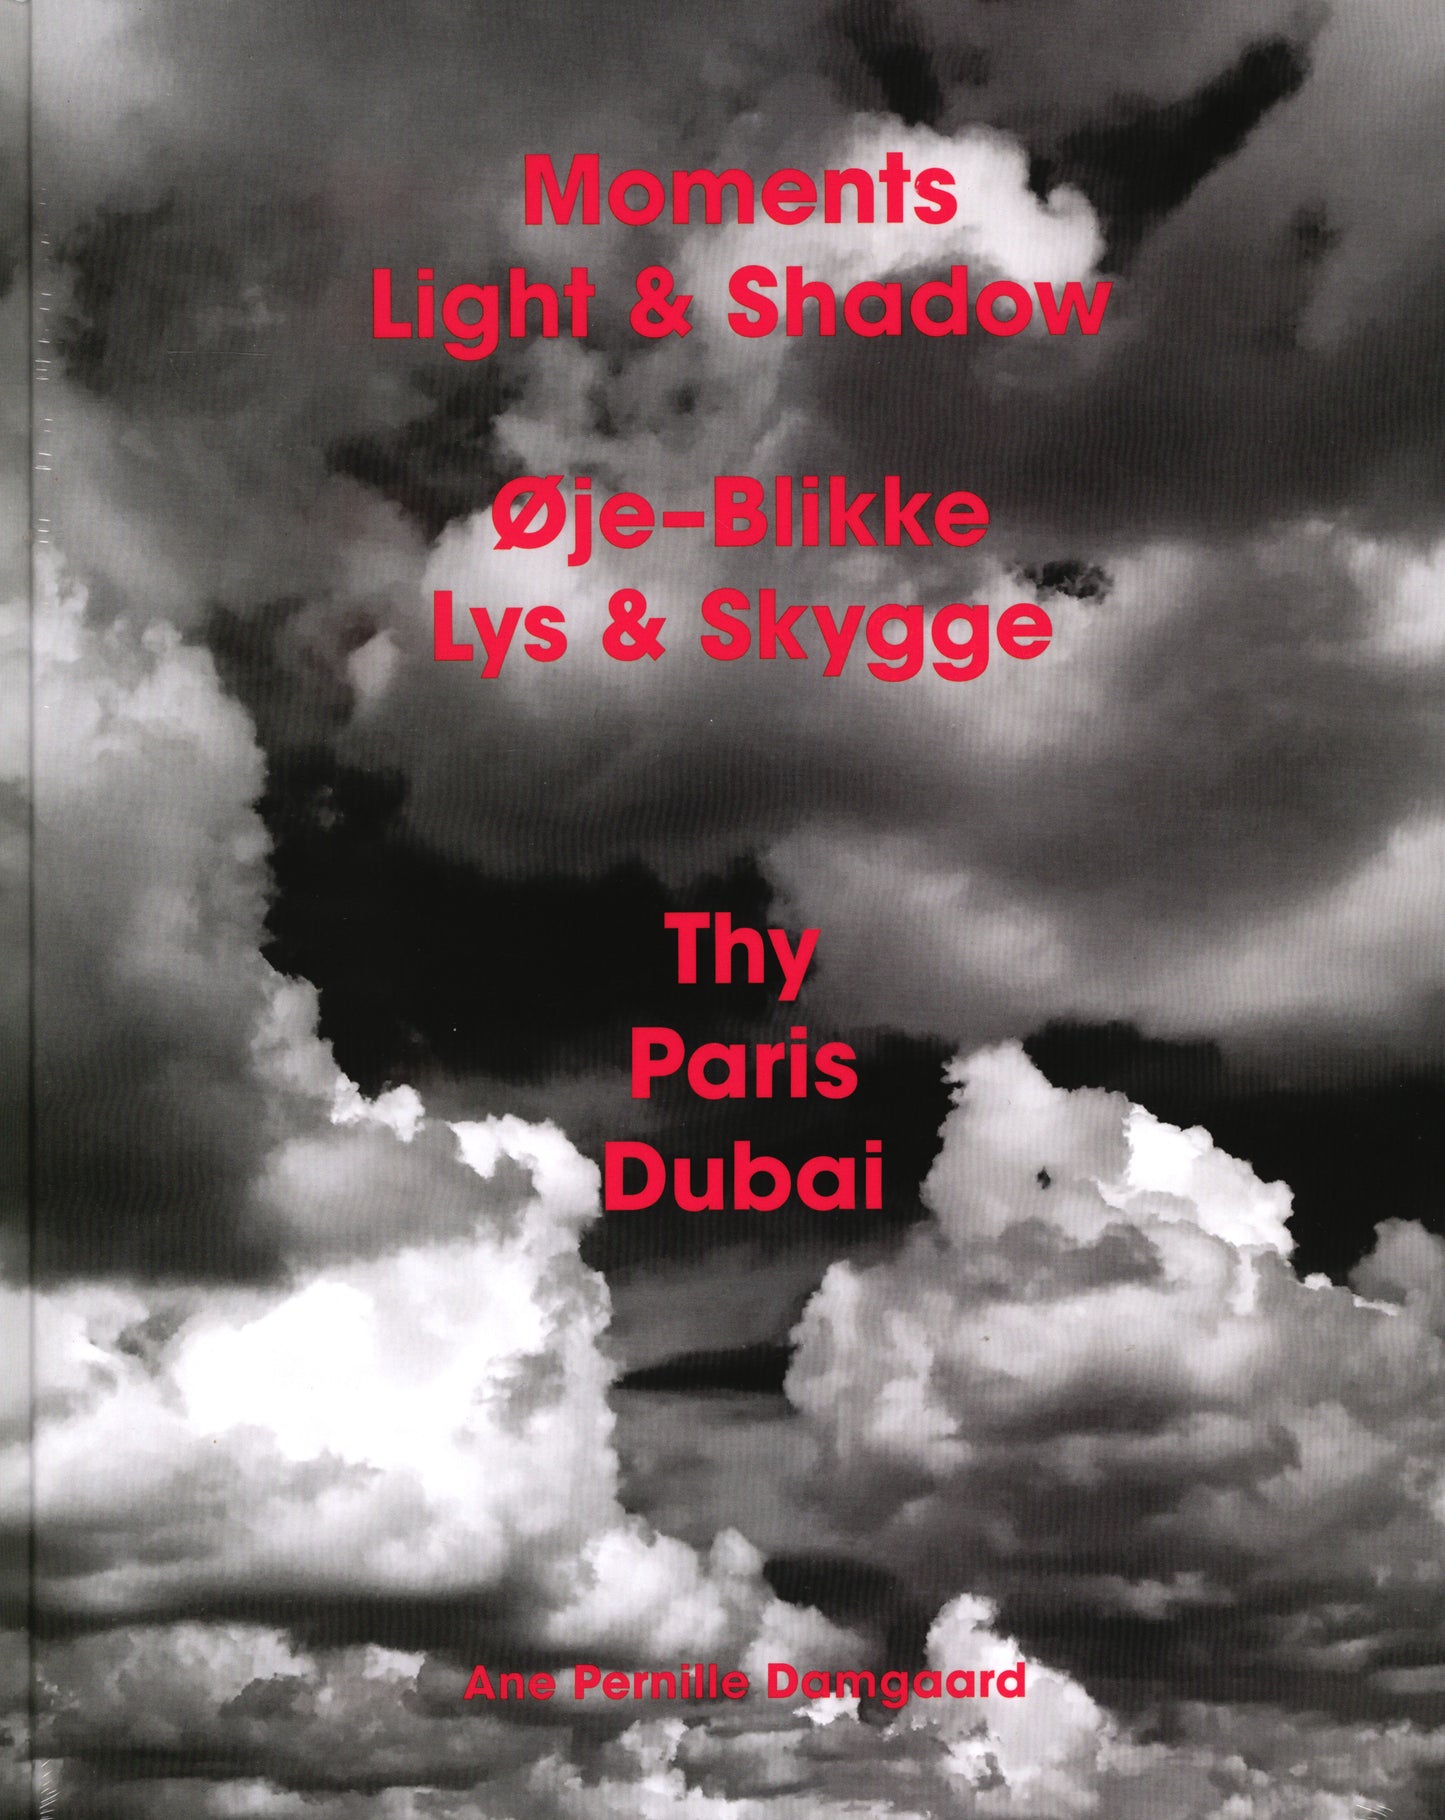 Øje-Blikke Lys & Skygge/Moments Light & Shadow